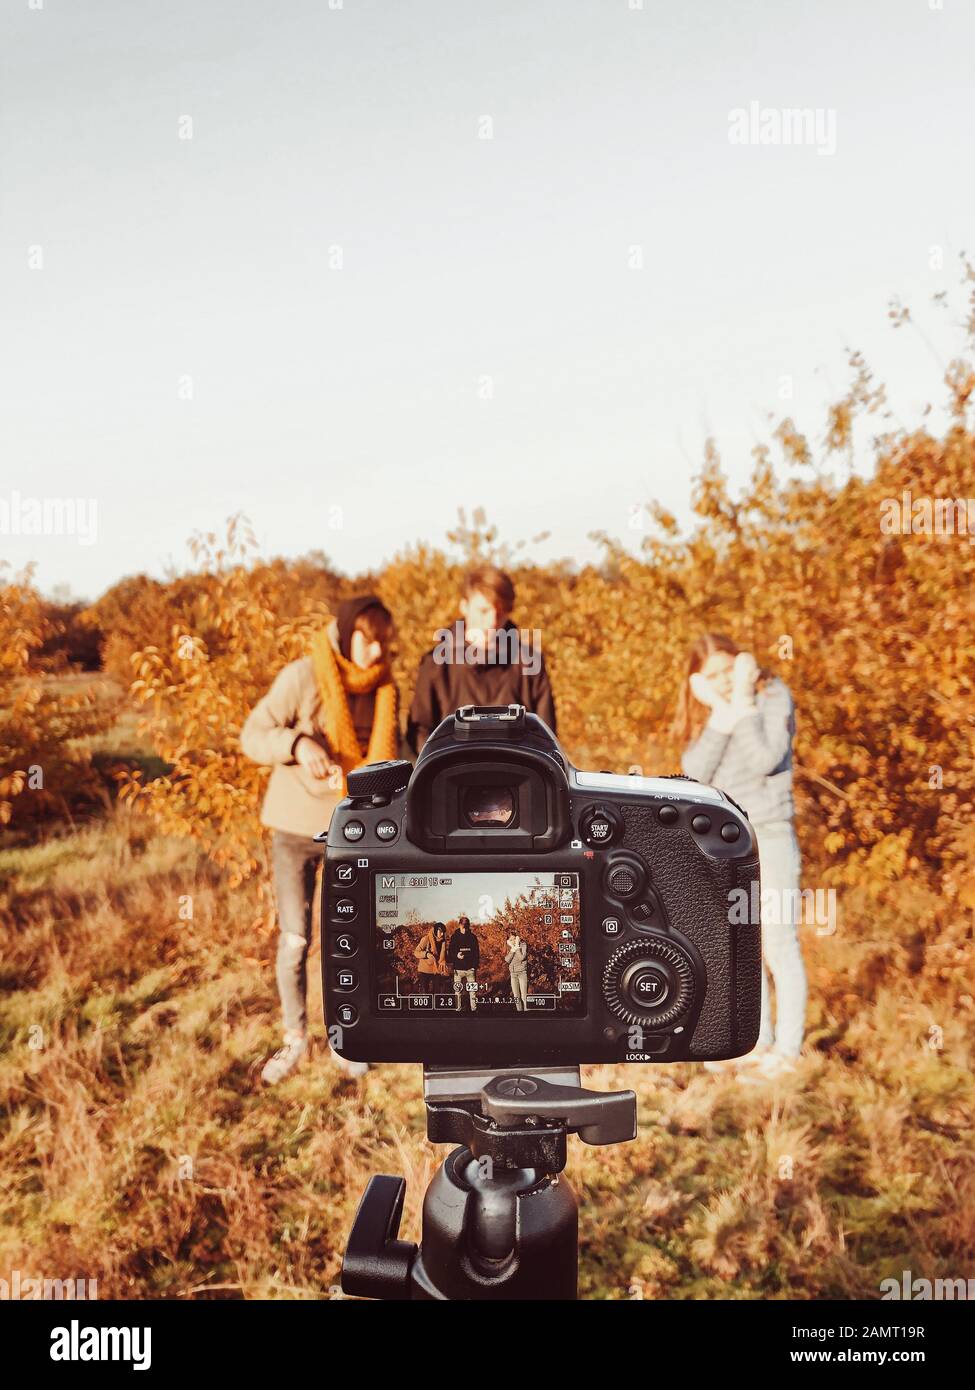 Drei Personen, die in einer Herbstlandschaft fotografiert werden, Niederlande Stockfoto